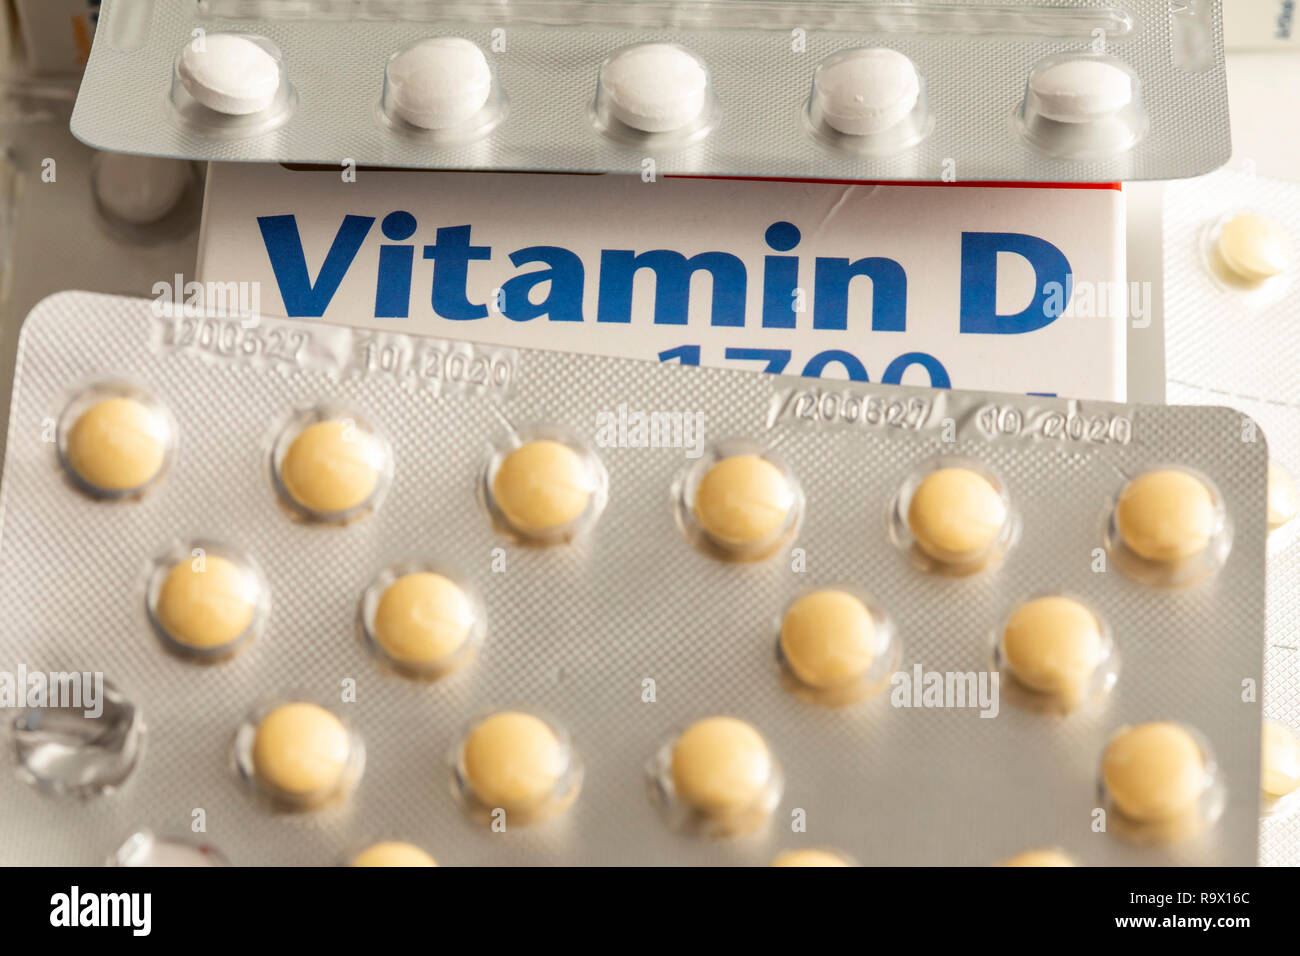 Vitamin-D-Tabletten Packungen, das Präparat soll den Vitamin-D-Mangold, durch geringer Sonneneinstrahlung, zum Beispiel im Winter, ergänzen, Stockfoto